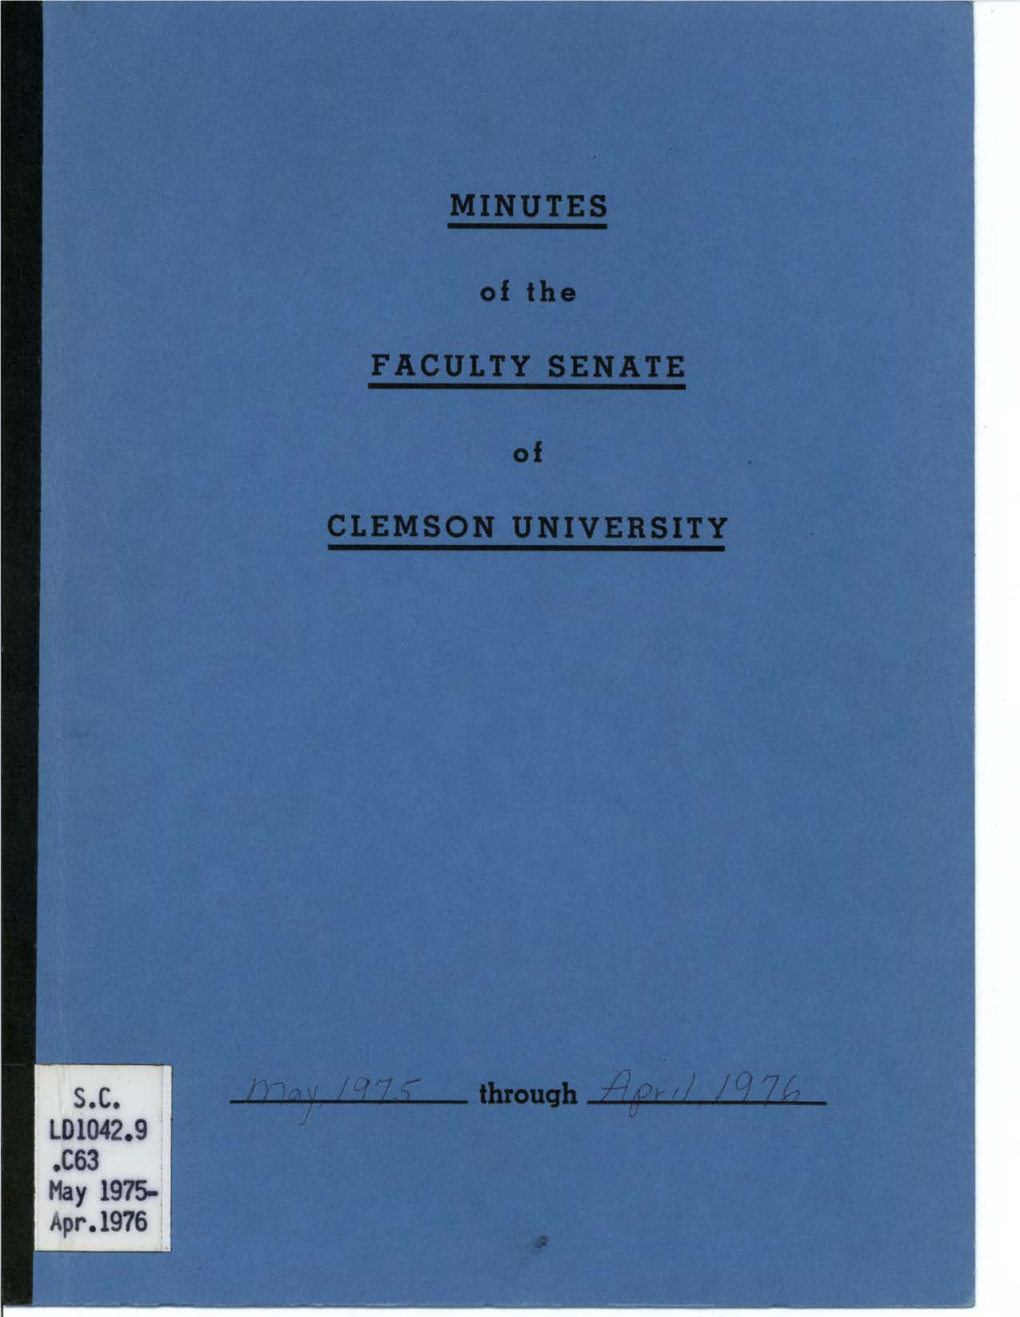 Faculty Senate Minutes, May 1975